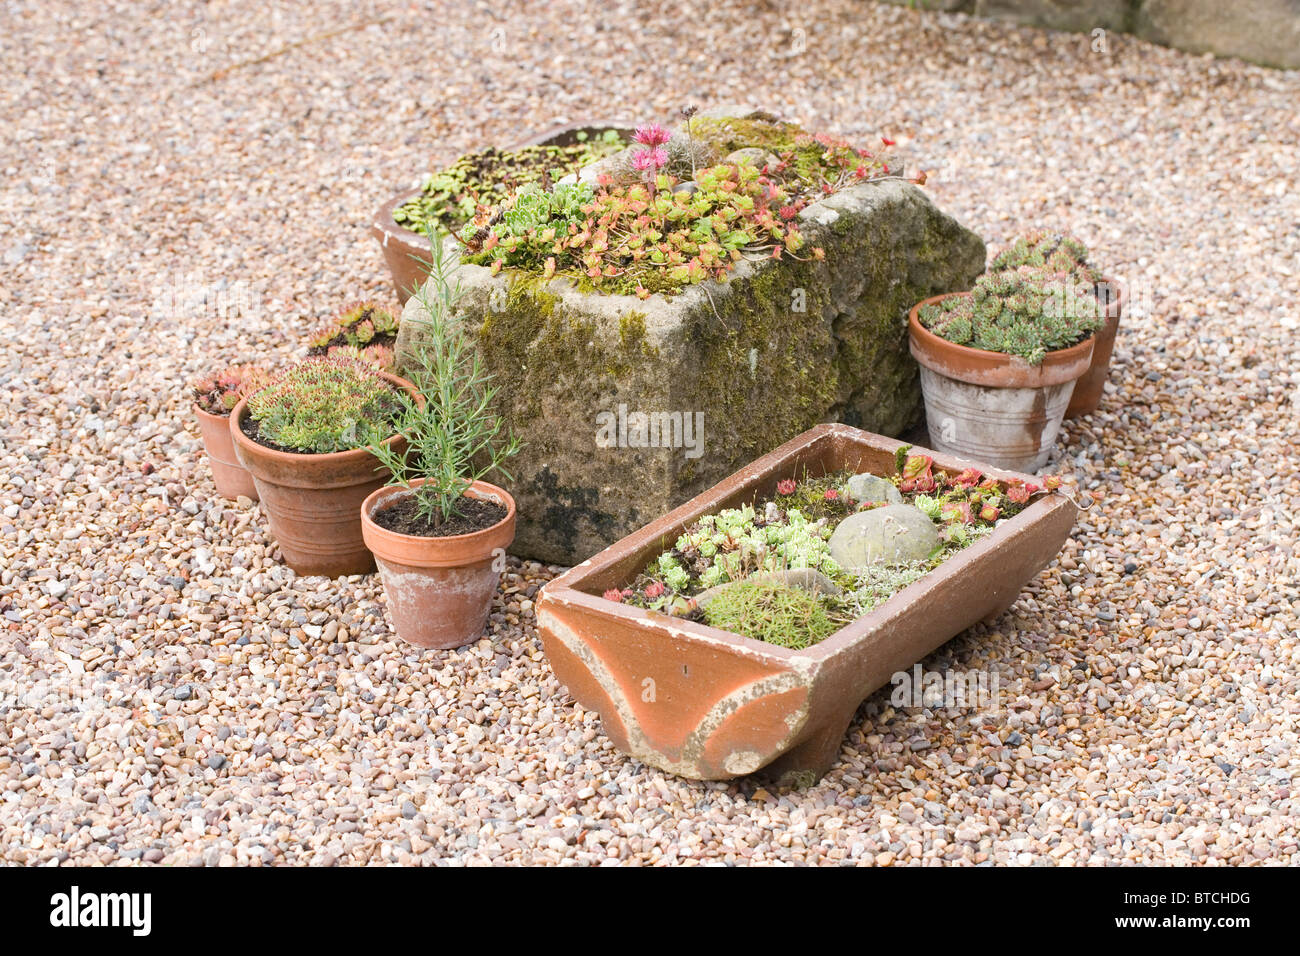 Pflanzenbehälter; alten Bauernhof Steintrog, Keramik Töpfe, alte Geflügel Keramik Wassertrog, auf einer geschotterten Fläche inmitten eines Gartens. Stockfoto